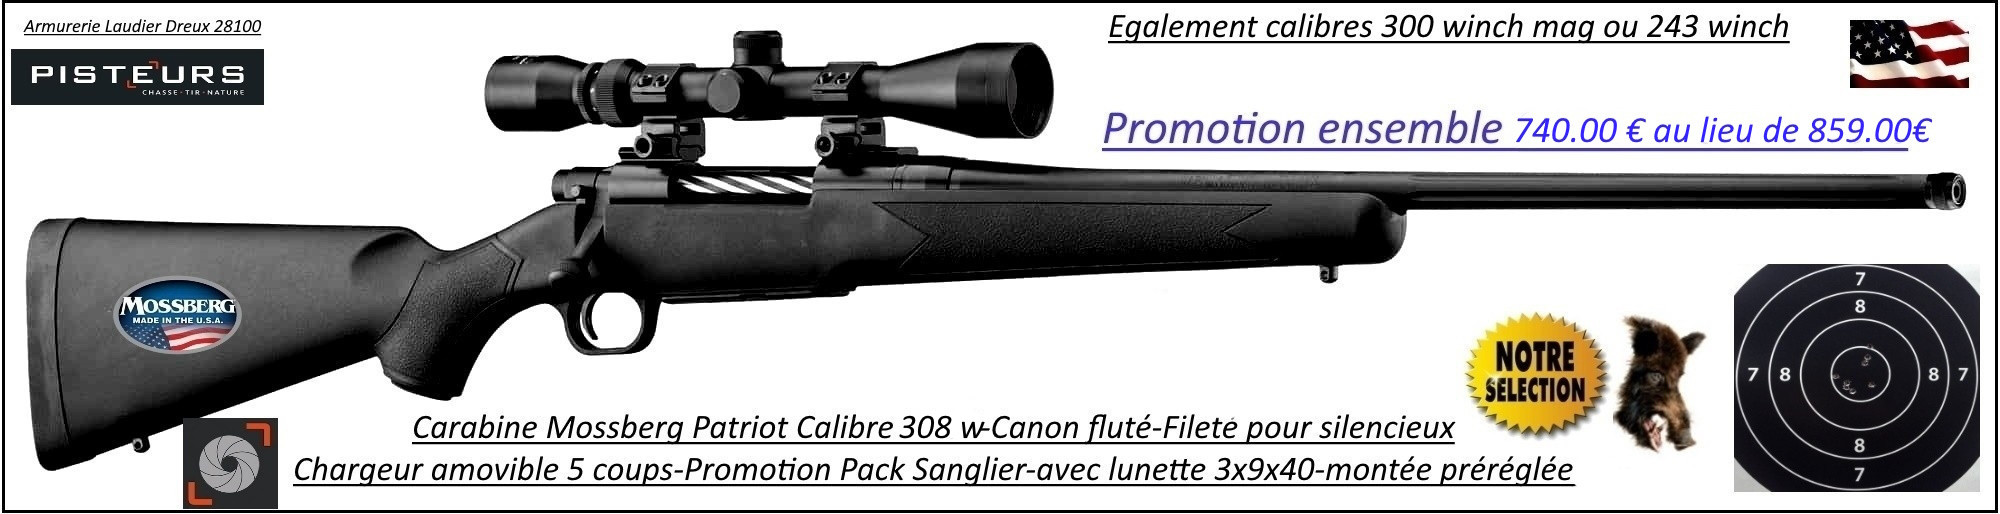 Carabine Mossberg Patriot Calibre 308 winch Répétition Pack  sanglier-complet-Lunette -3x9x40 Canon-FILETE-POUR-SILENCIEUX-Promotion-740.00€ ttc au lieu de 859.00 € ttc-Ref PCKMO3081F-ea